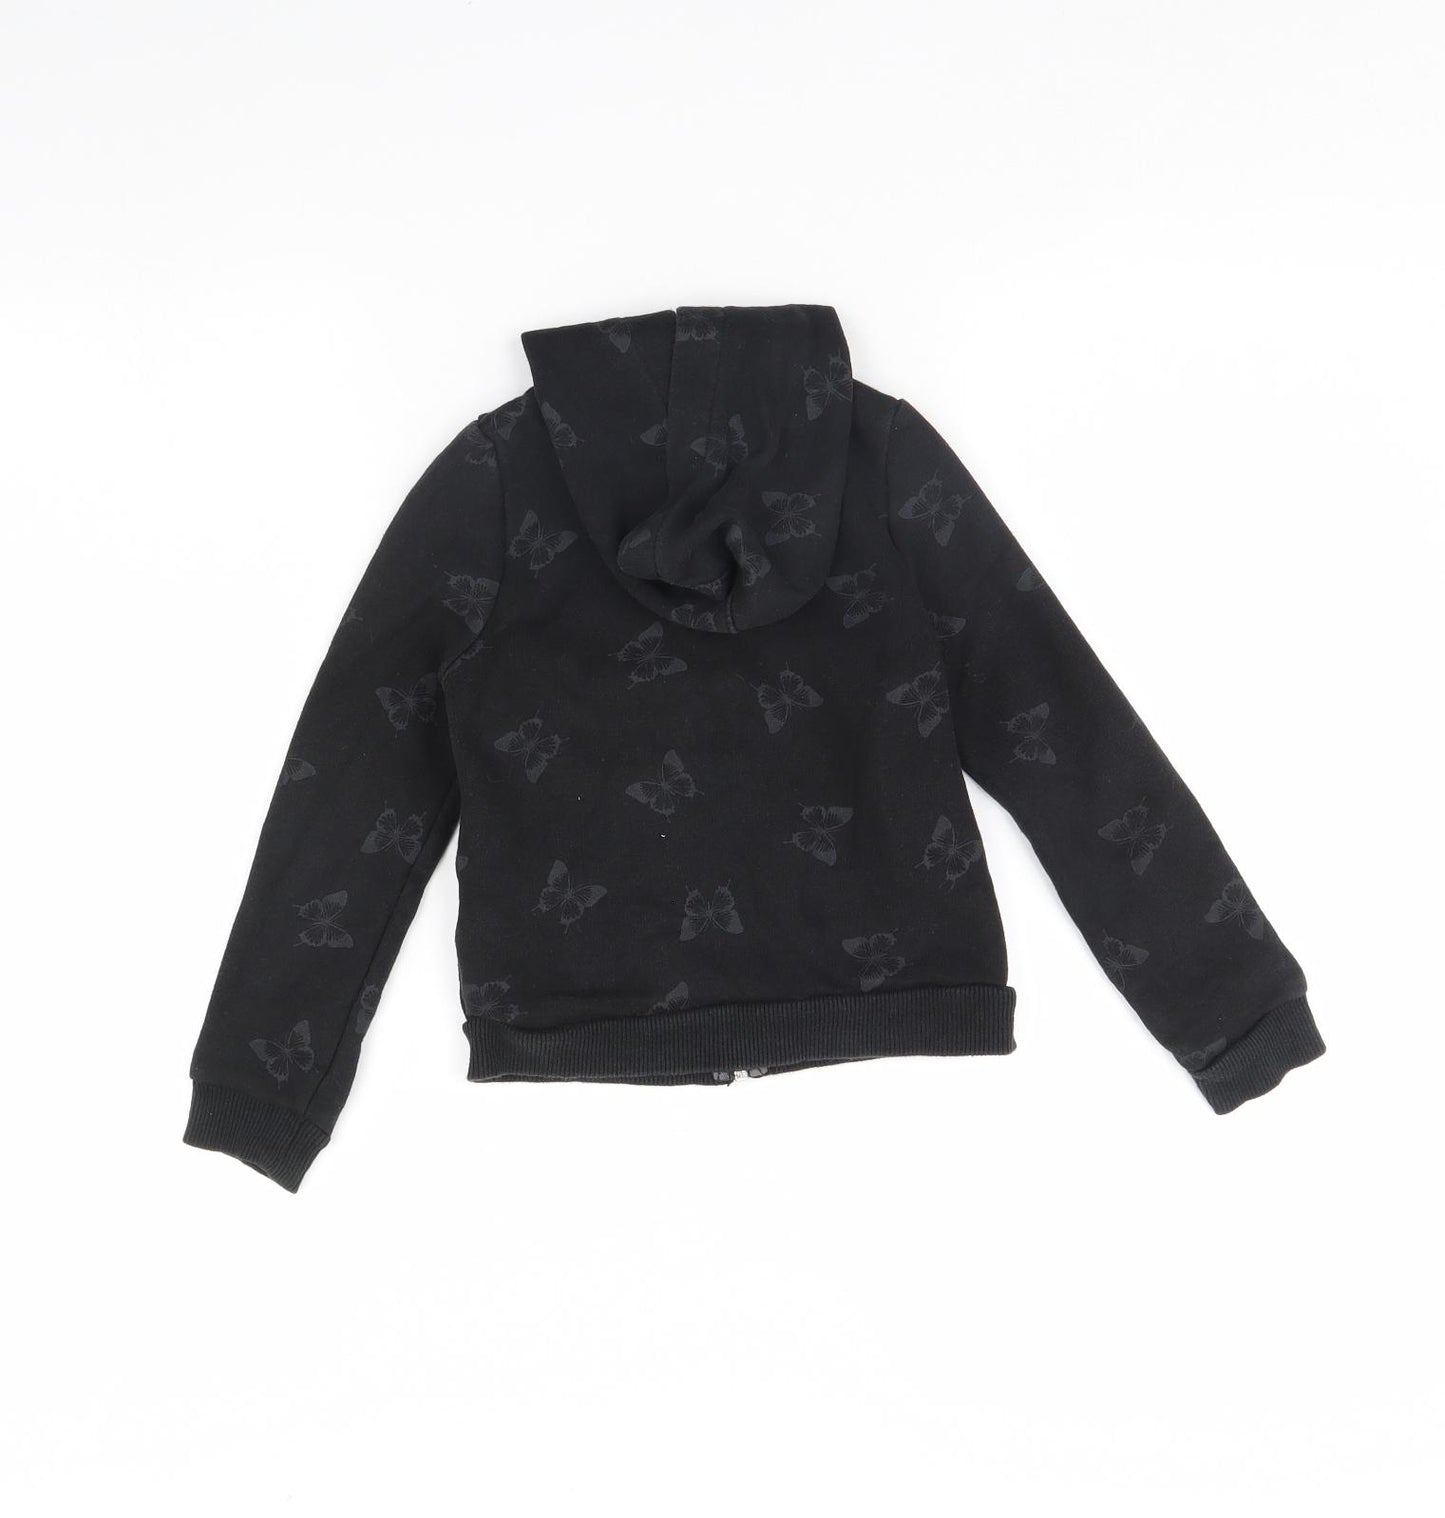 H&M Girls Black Animal Print  Jacket  Size 4 Years